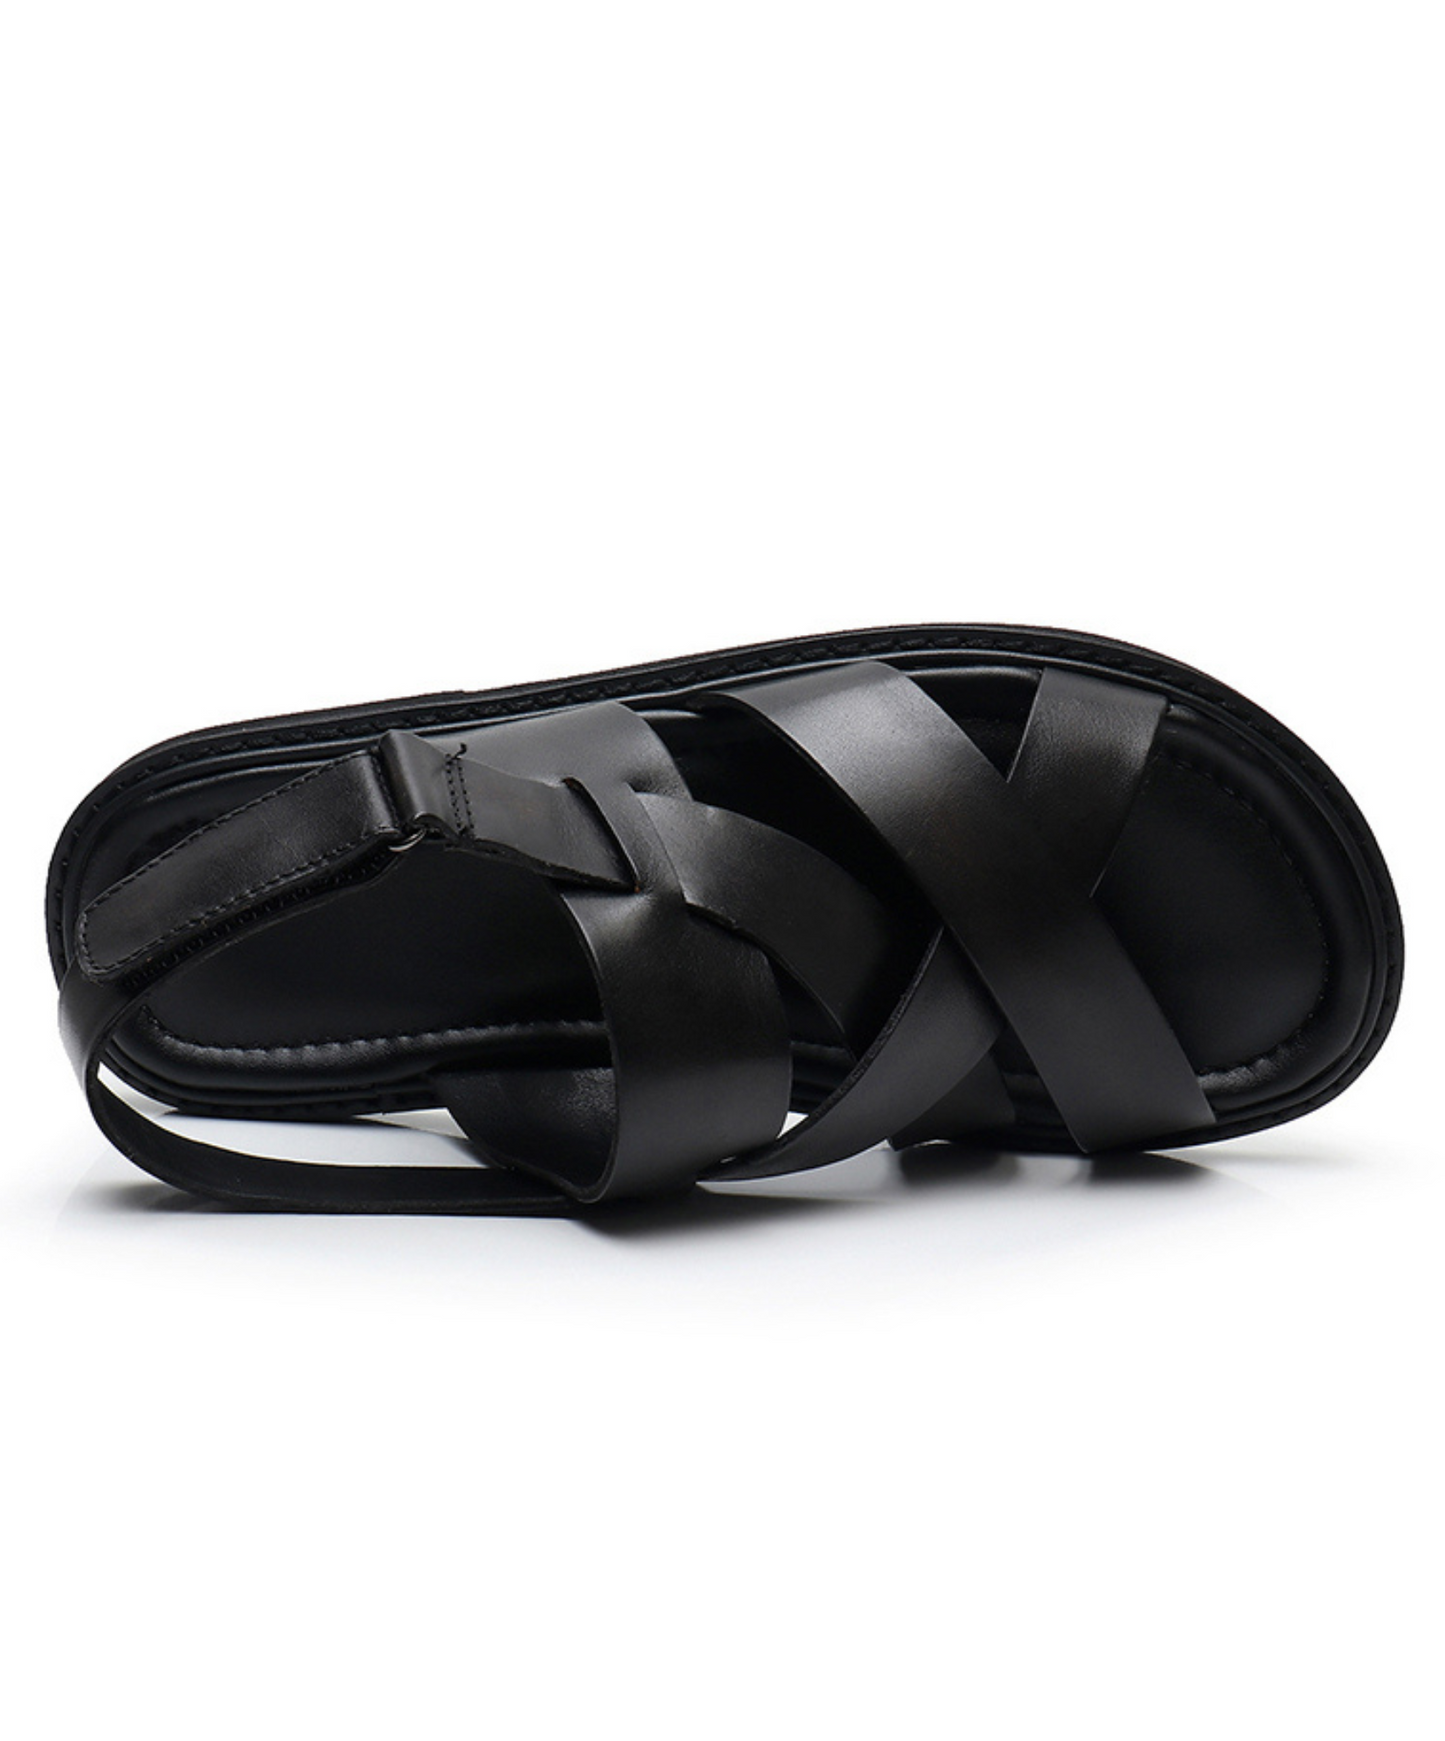 dark cross strap sandals EN938